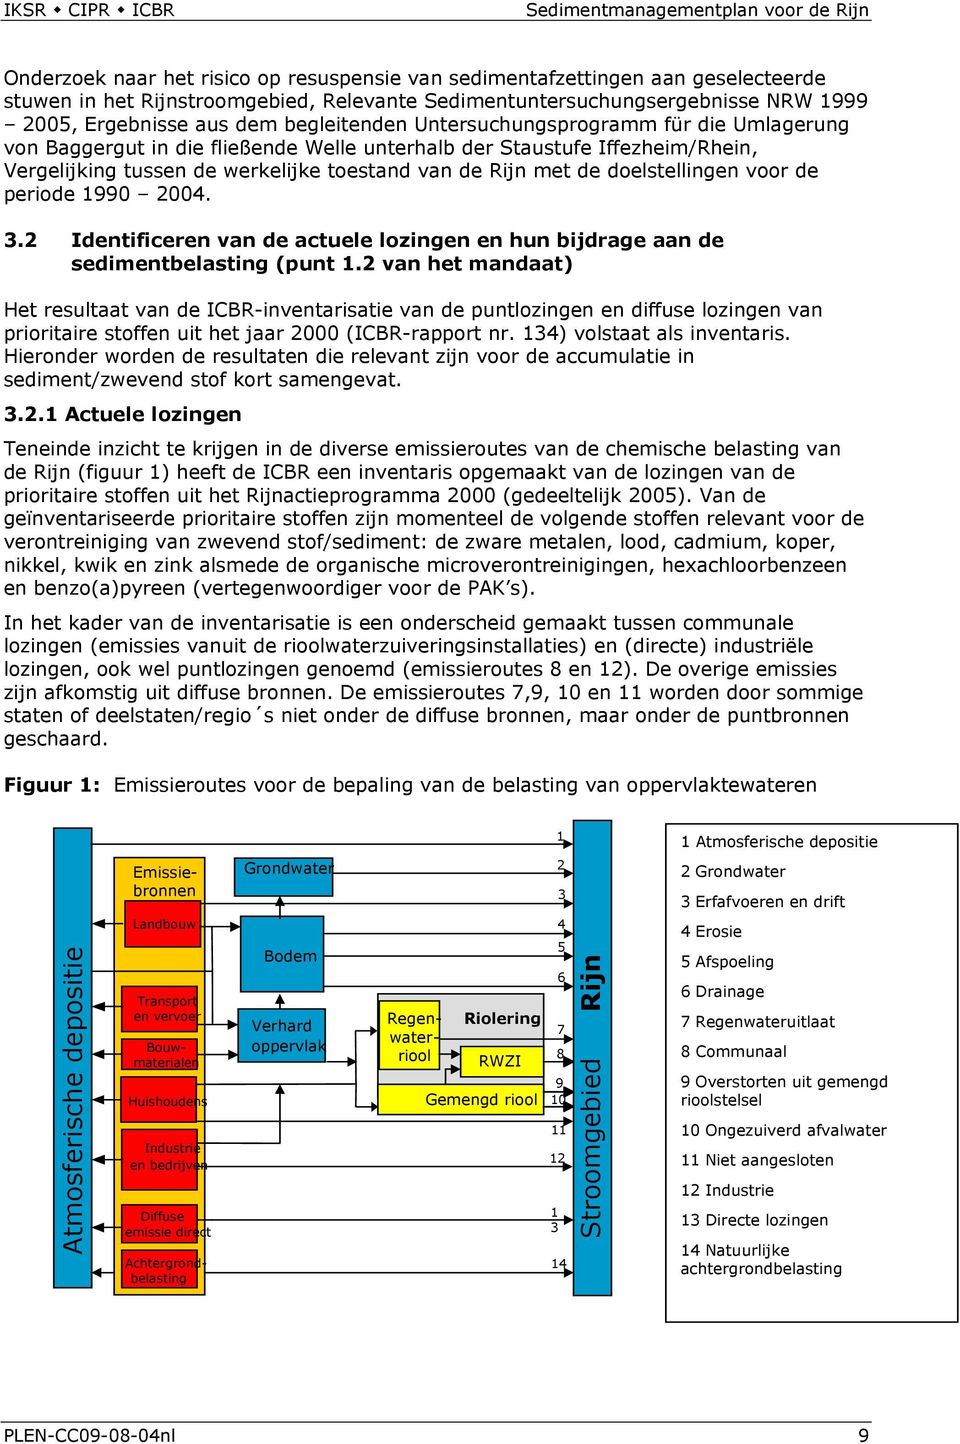 doelstellingen voor de periode 1990 2004. 3.2 Identificeren van de actuele lozingen en hun bijdrage aan de sedimentbelasting (punt 1.